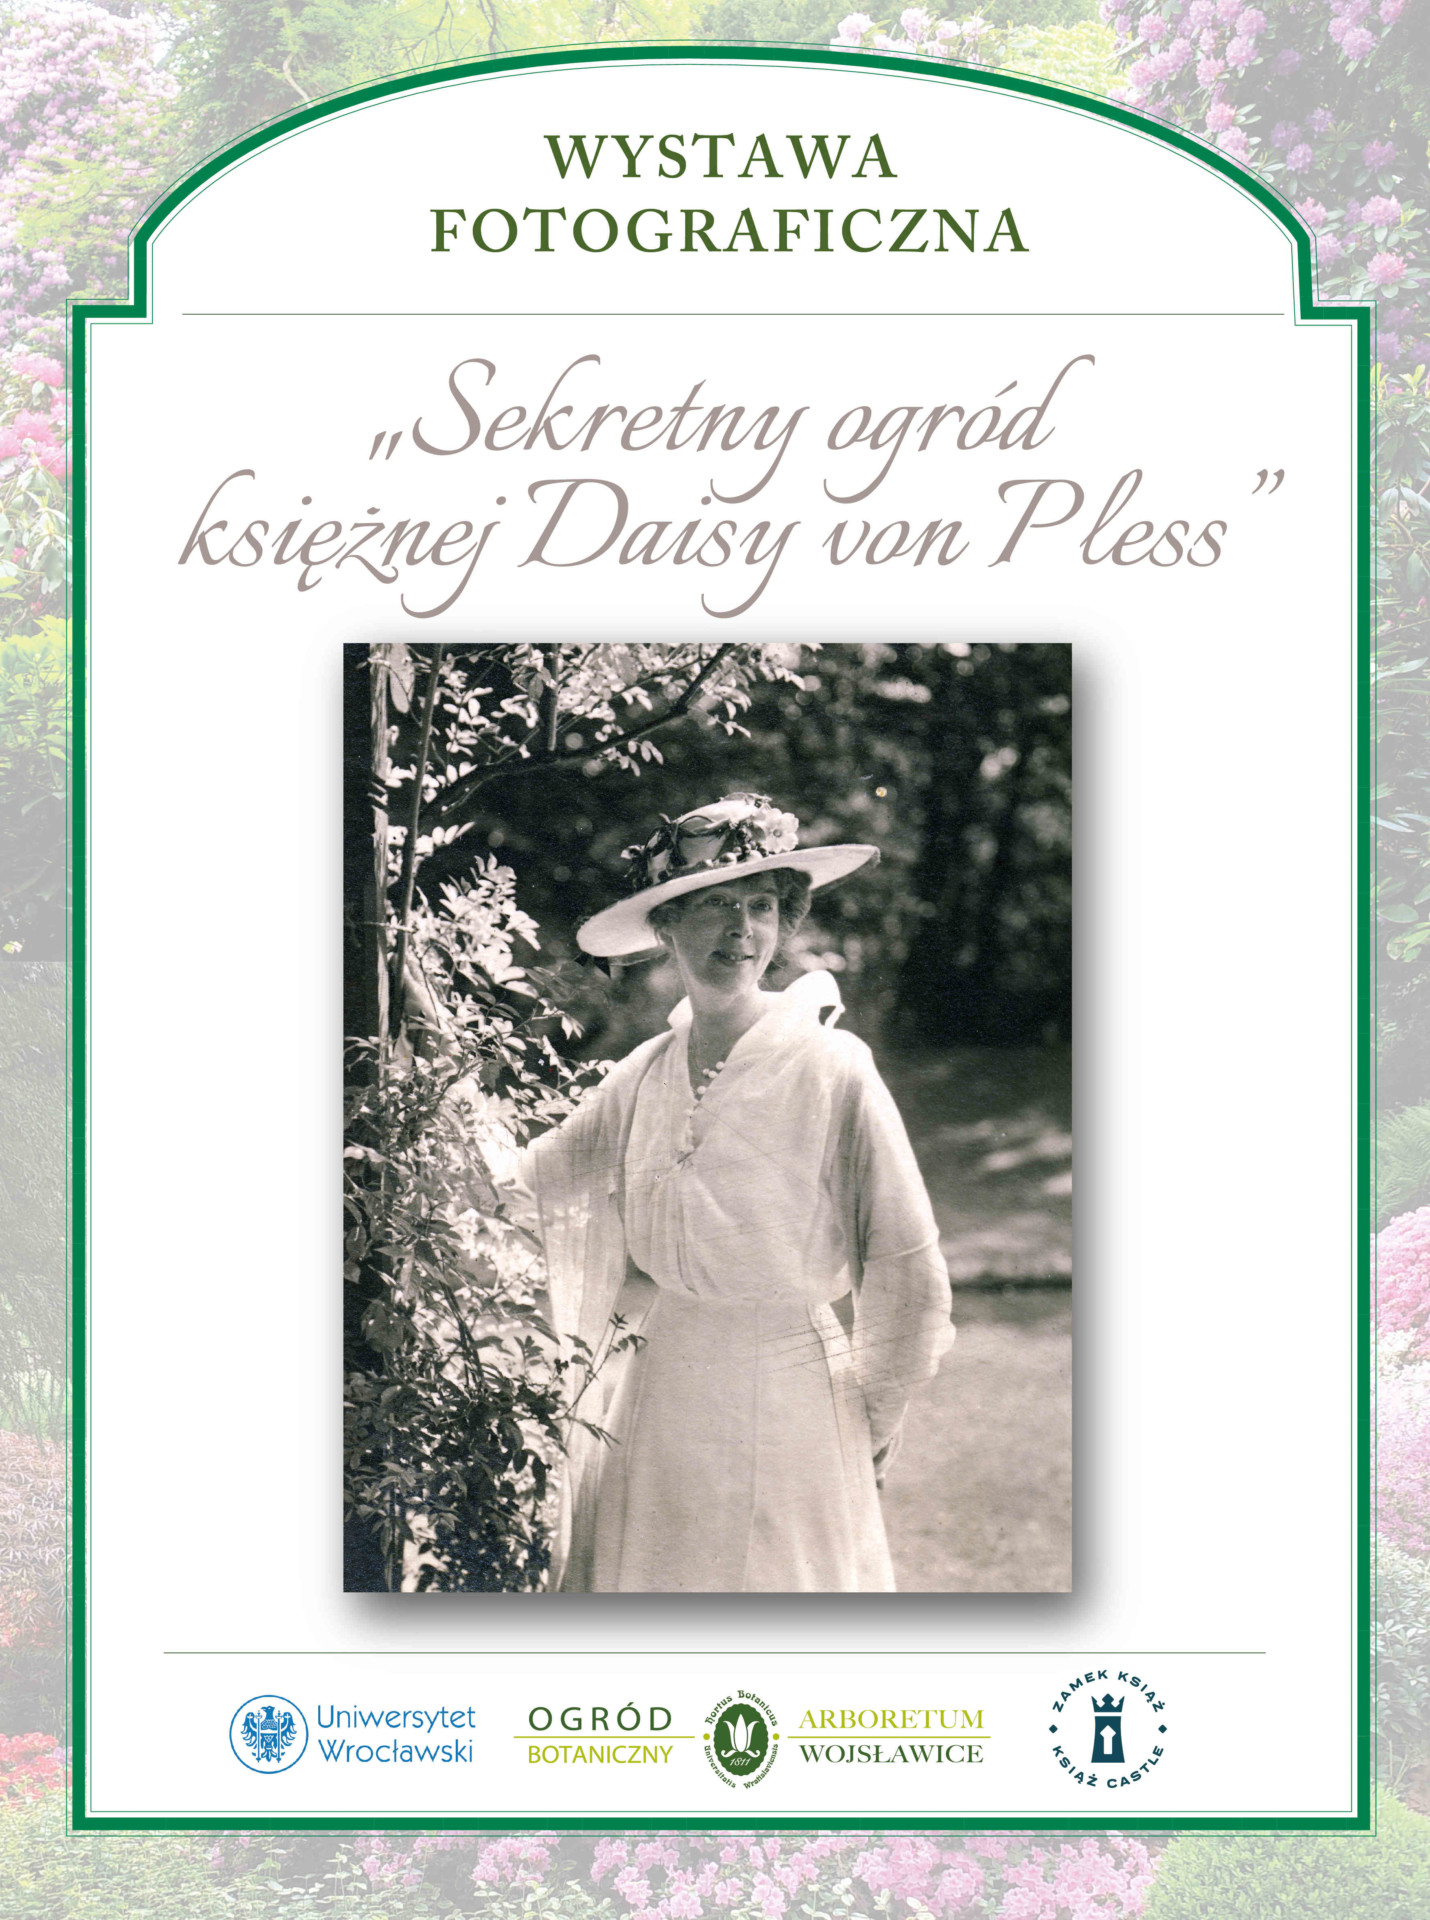 plakat promujący wystawę fotograficzną "Sekretny ogród księżnej Daisy von Pless"